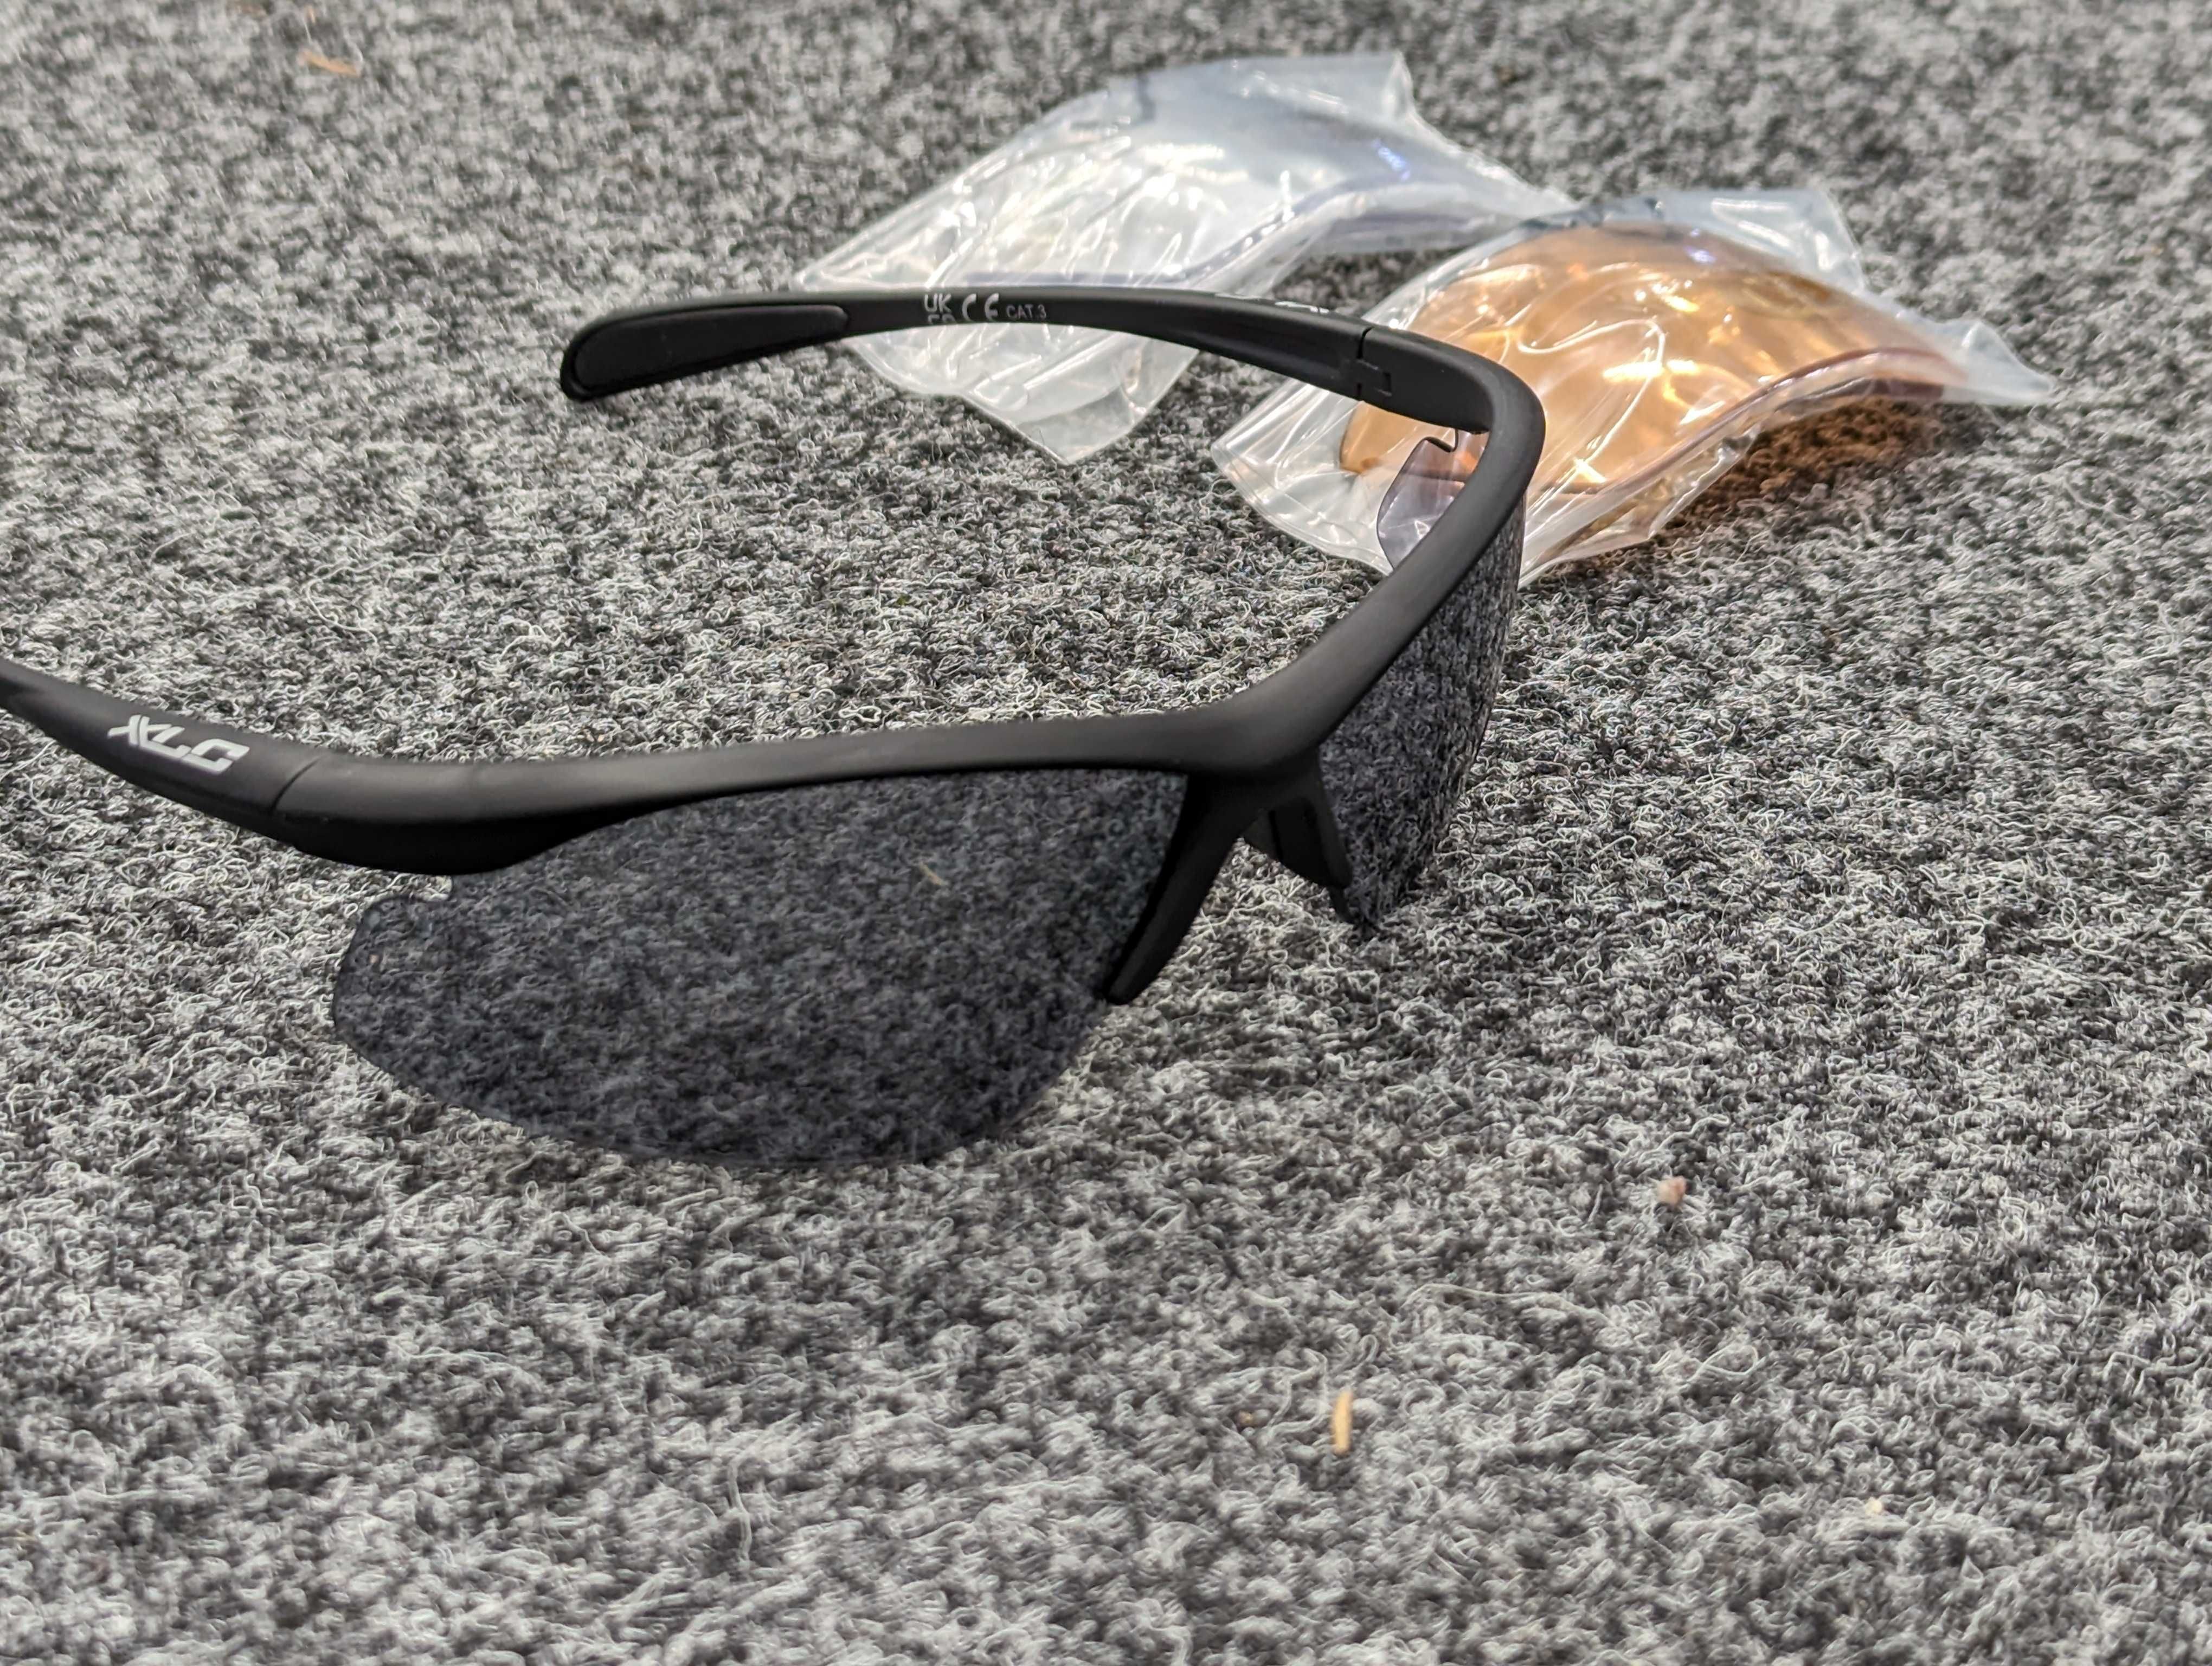 Okulary przeciwsłoneczne XLC SG-CO5 Malediven, trzy szyby w zestawie